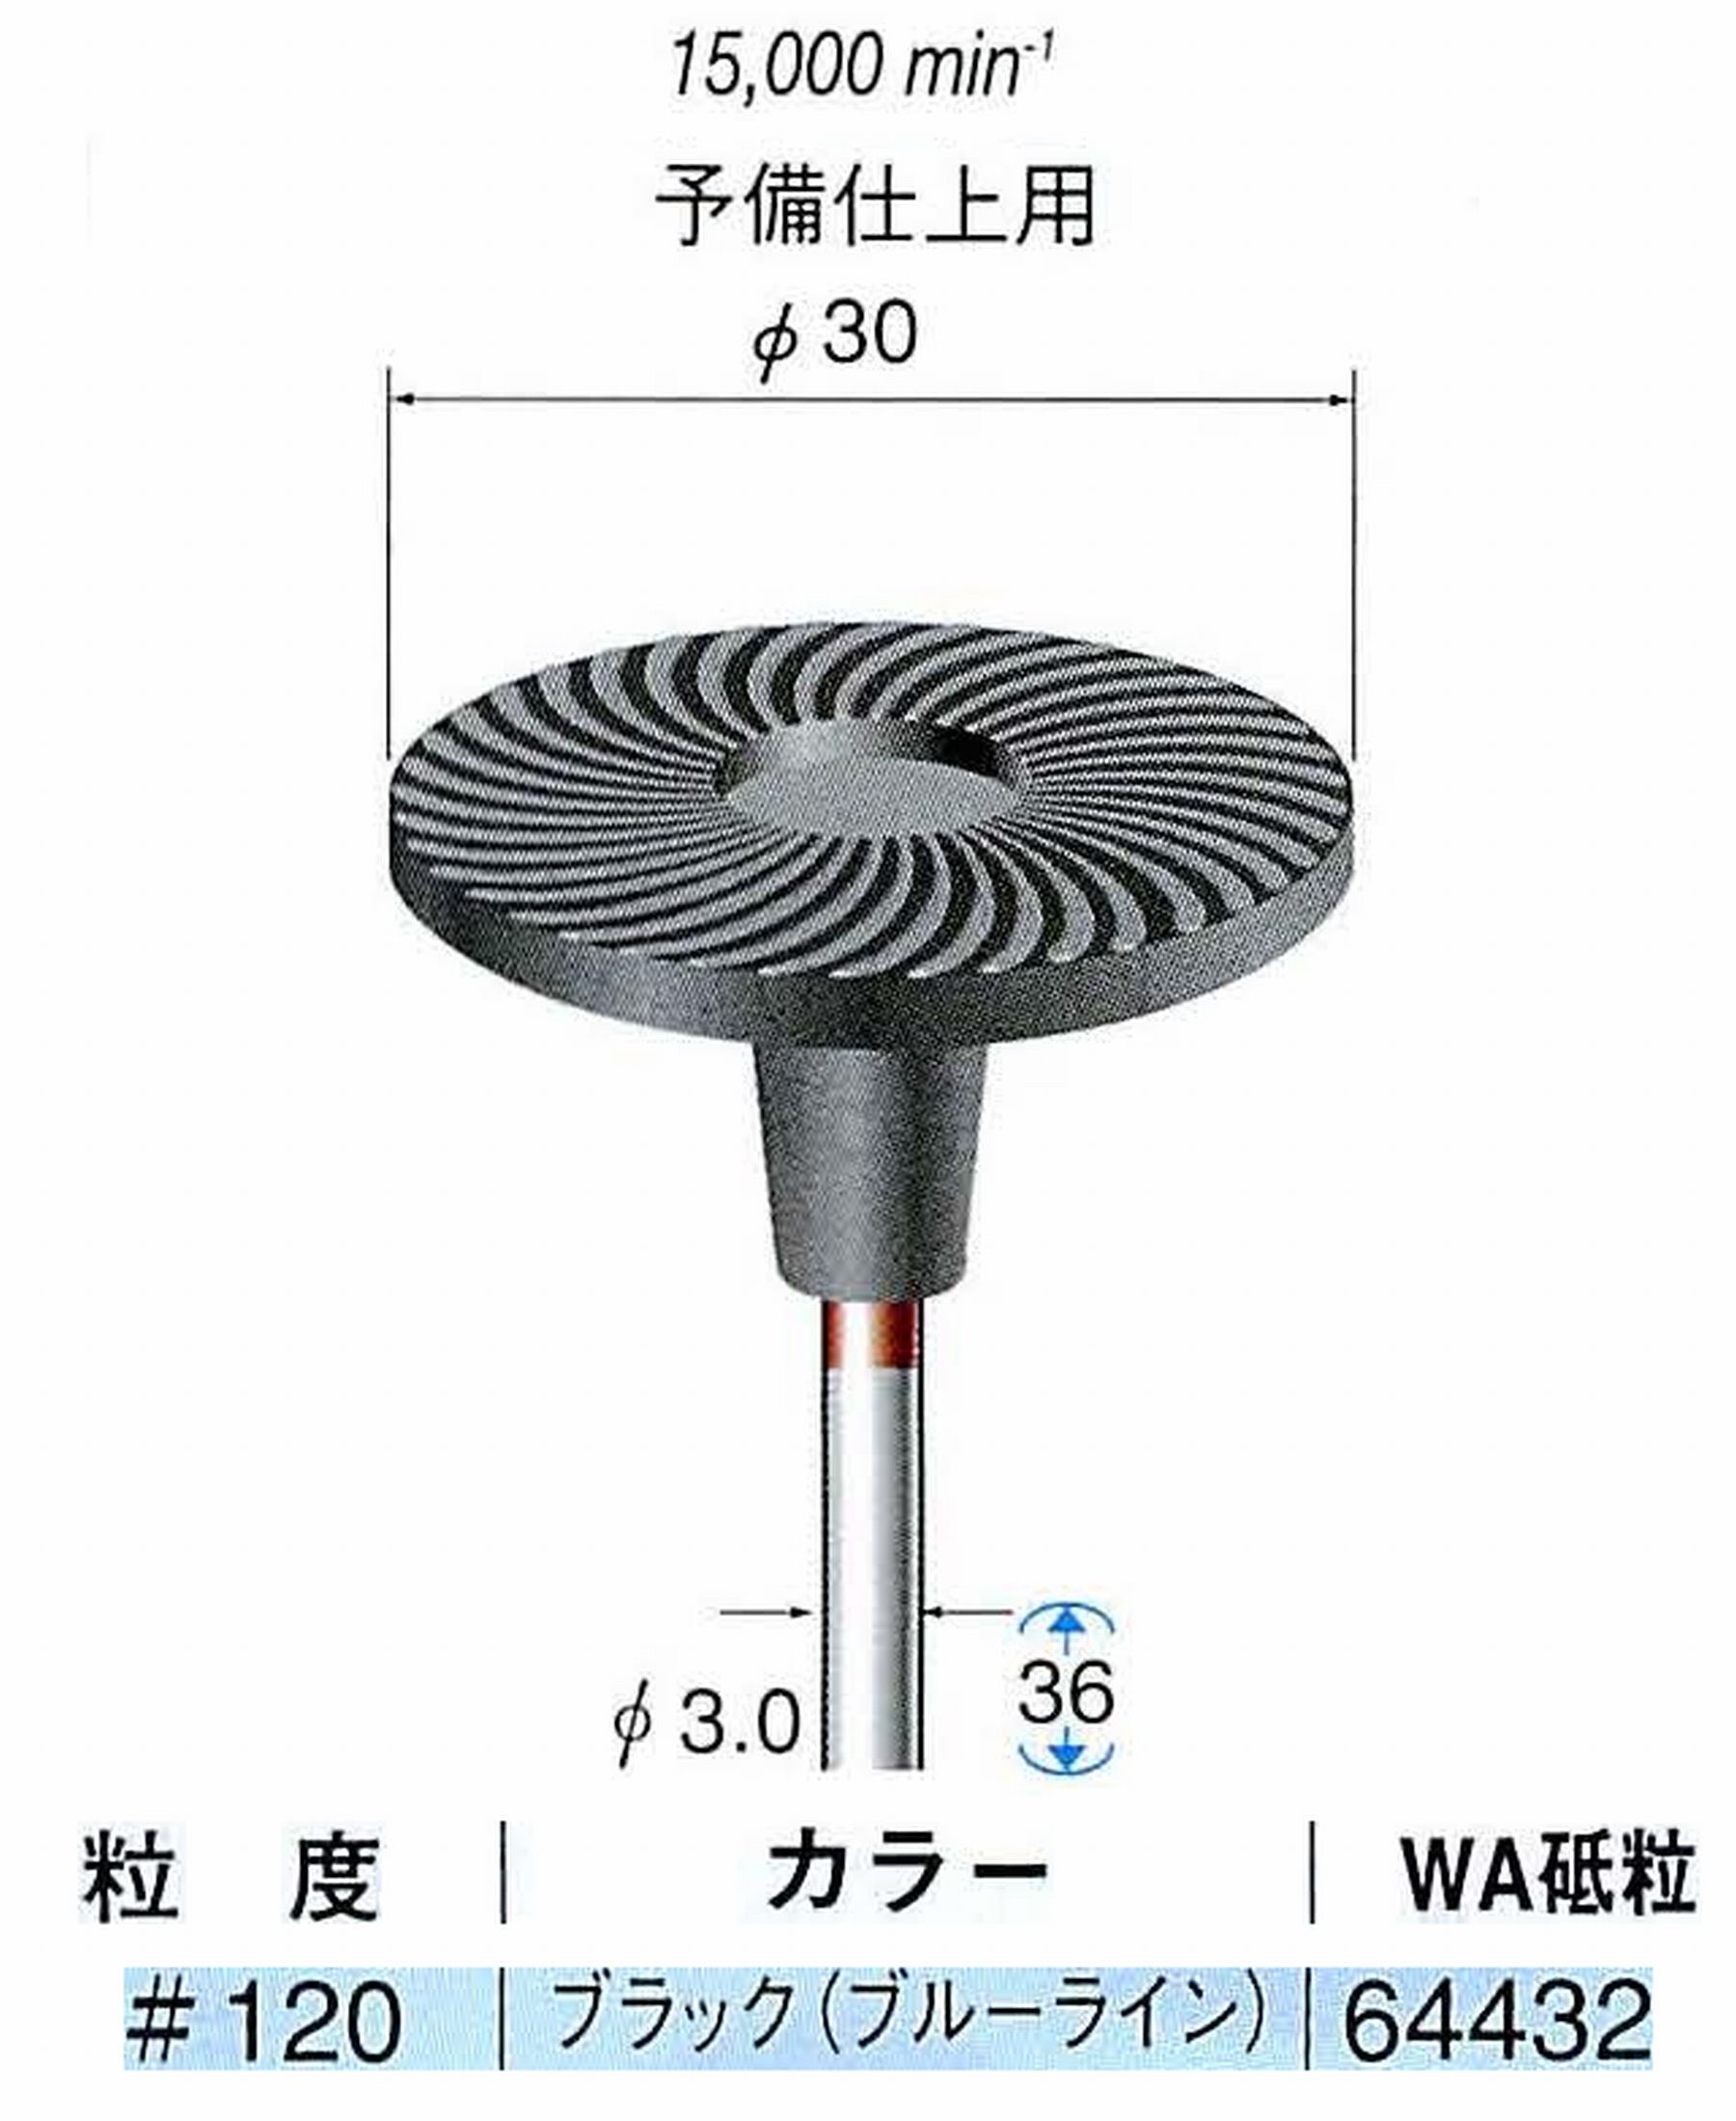 ナカニシ/NAKANISHI アングルグラインダ(電動・エアー) アングルアタッチメント専用工具 軸付ゴム砥石ディスク(ゴムパット一体型)WA砥粒 軸径(シャンク)φ3.0mm 64432